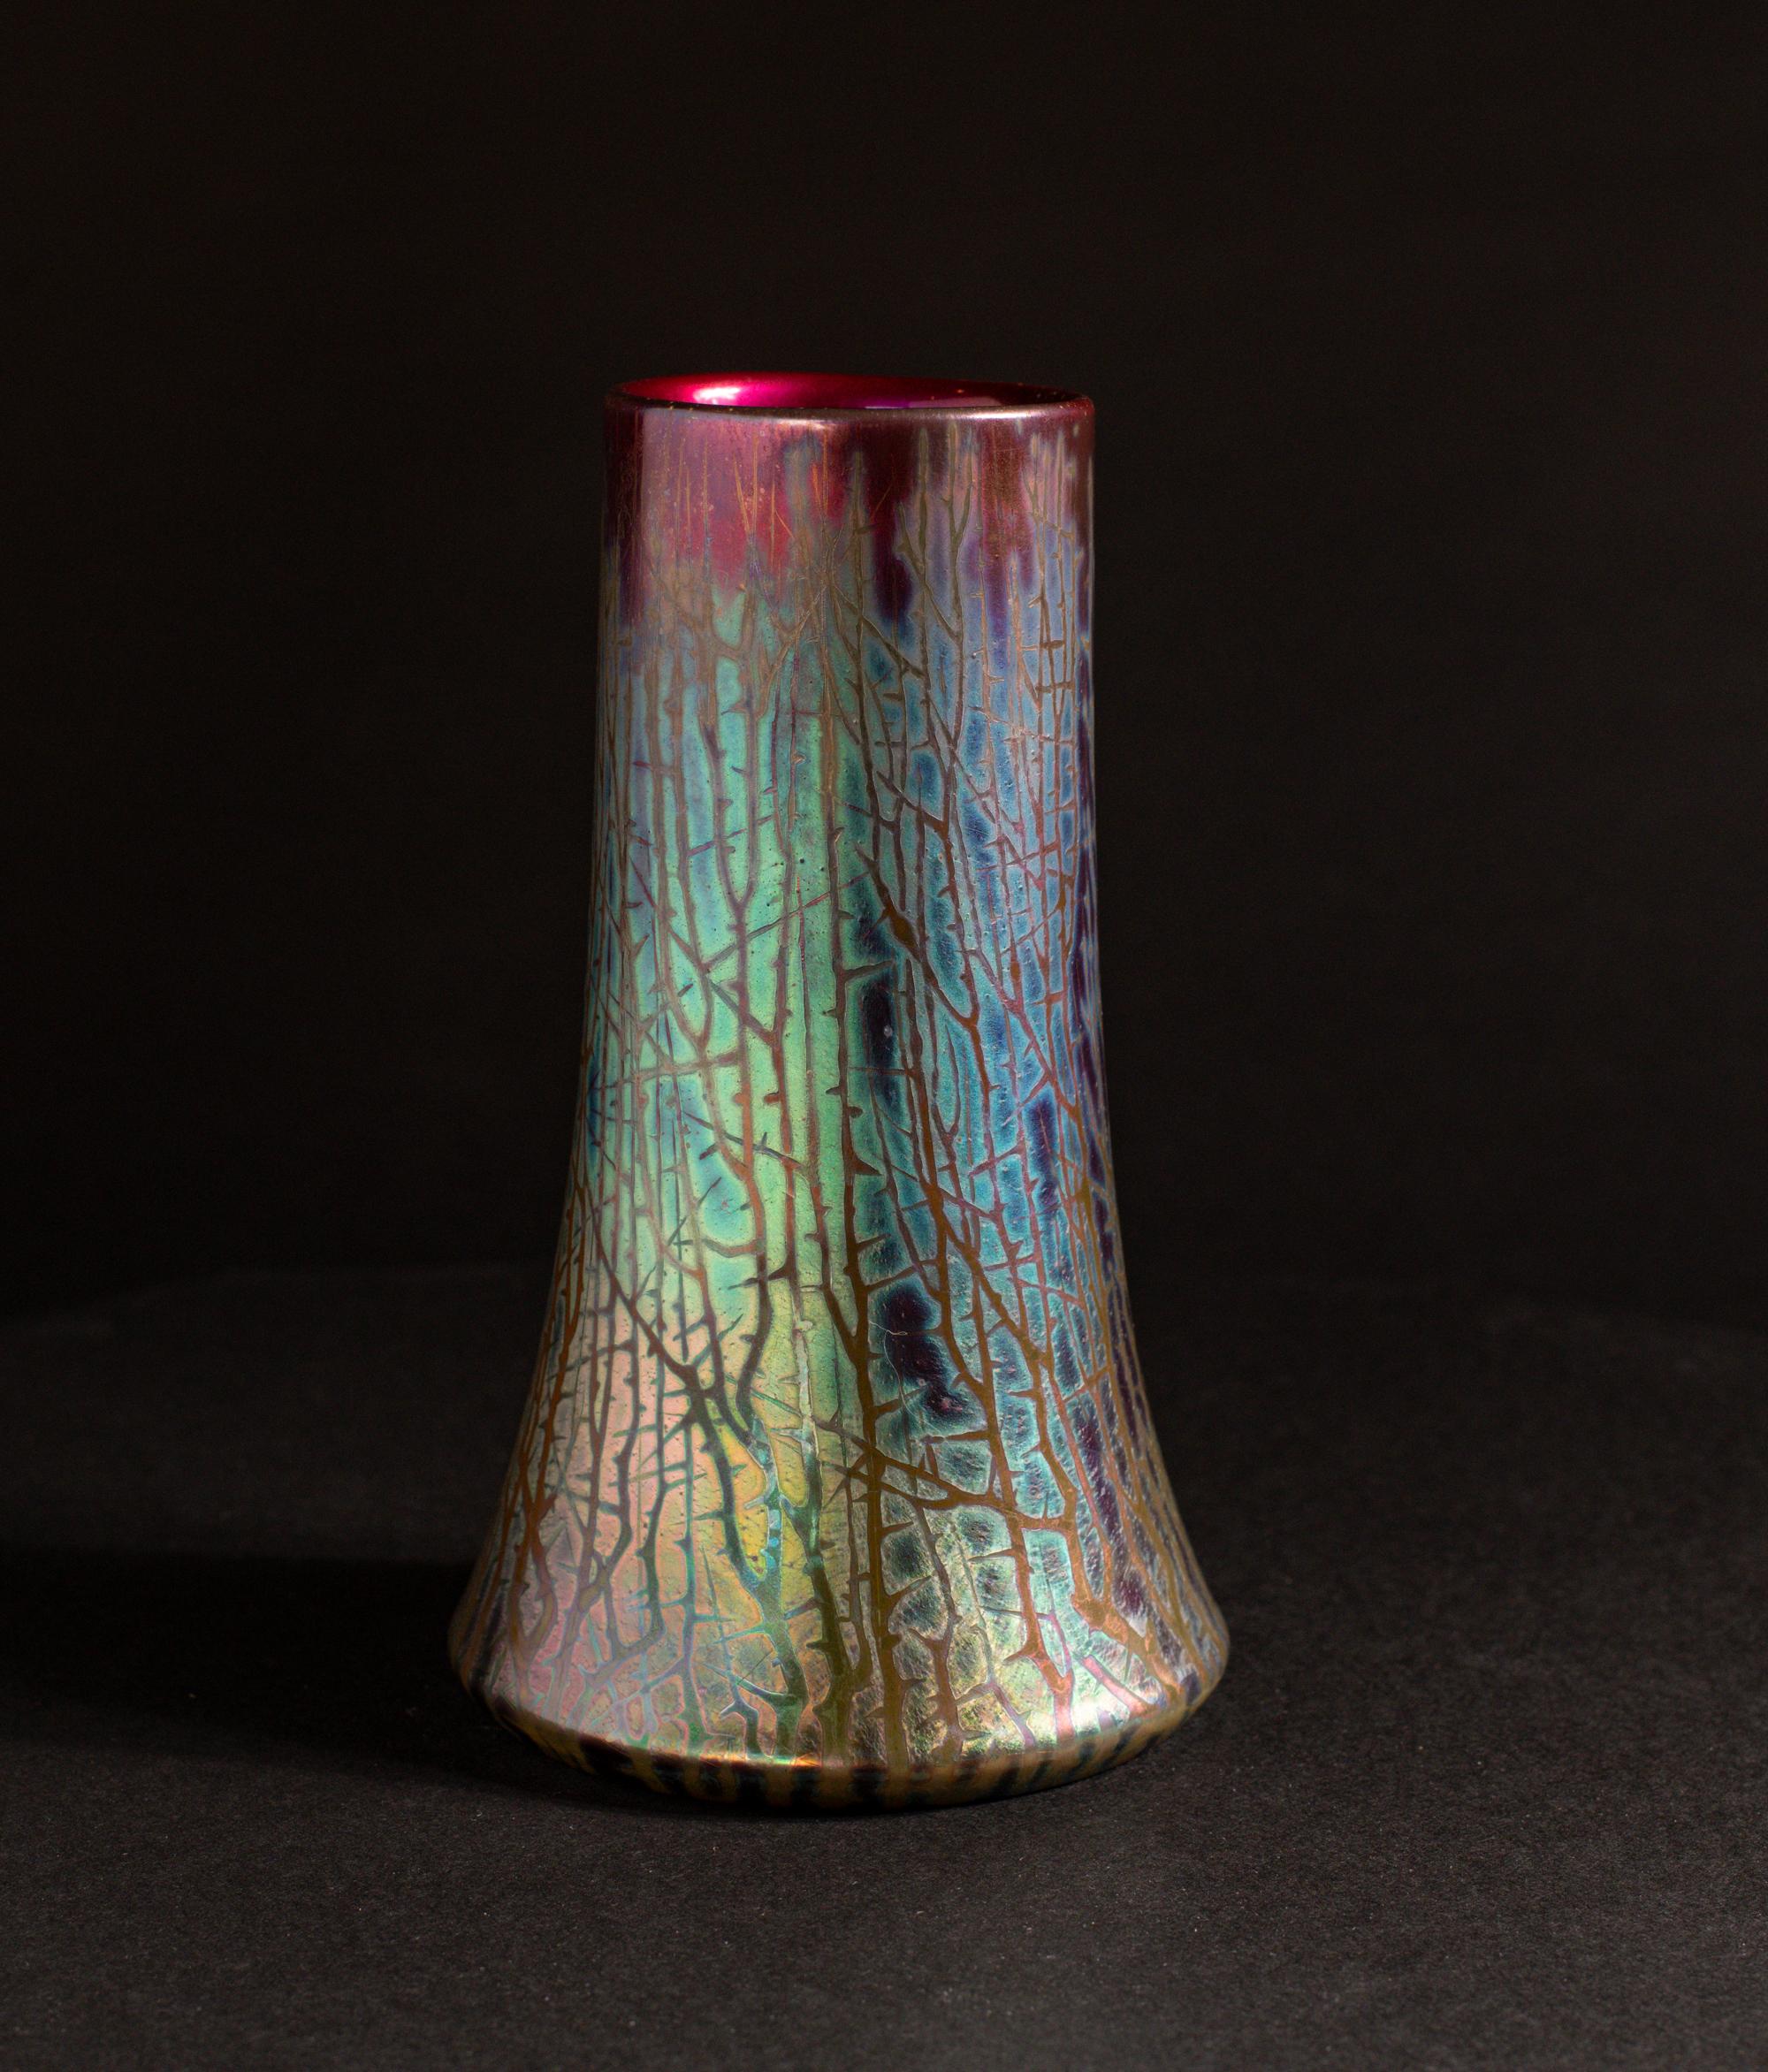 La rencontre avec les céramiques lustrées de Massier est l'occasion d'un voyage aux couleurs acidulées, d'une exploration qui suscite une réflexion profonde et exige de la transparence. Clément Massier, céramiste accompli issu d'une famille de